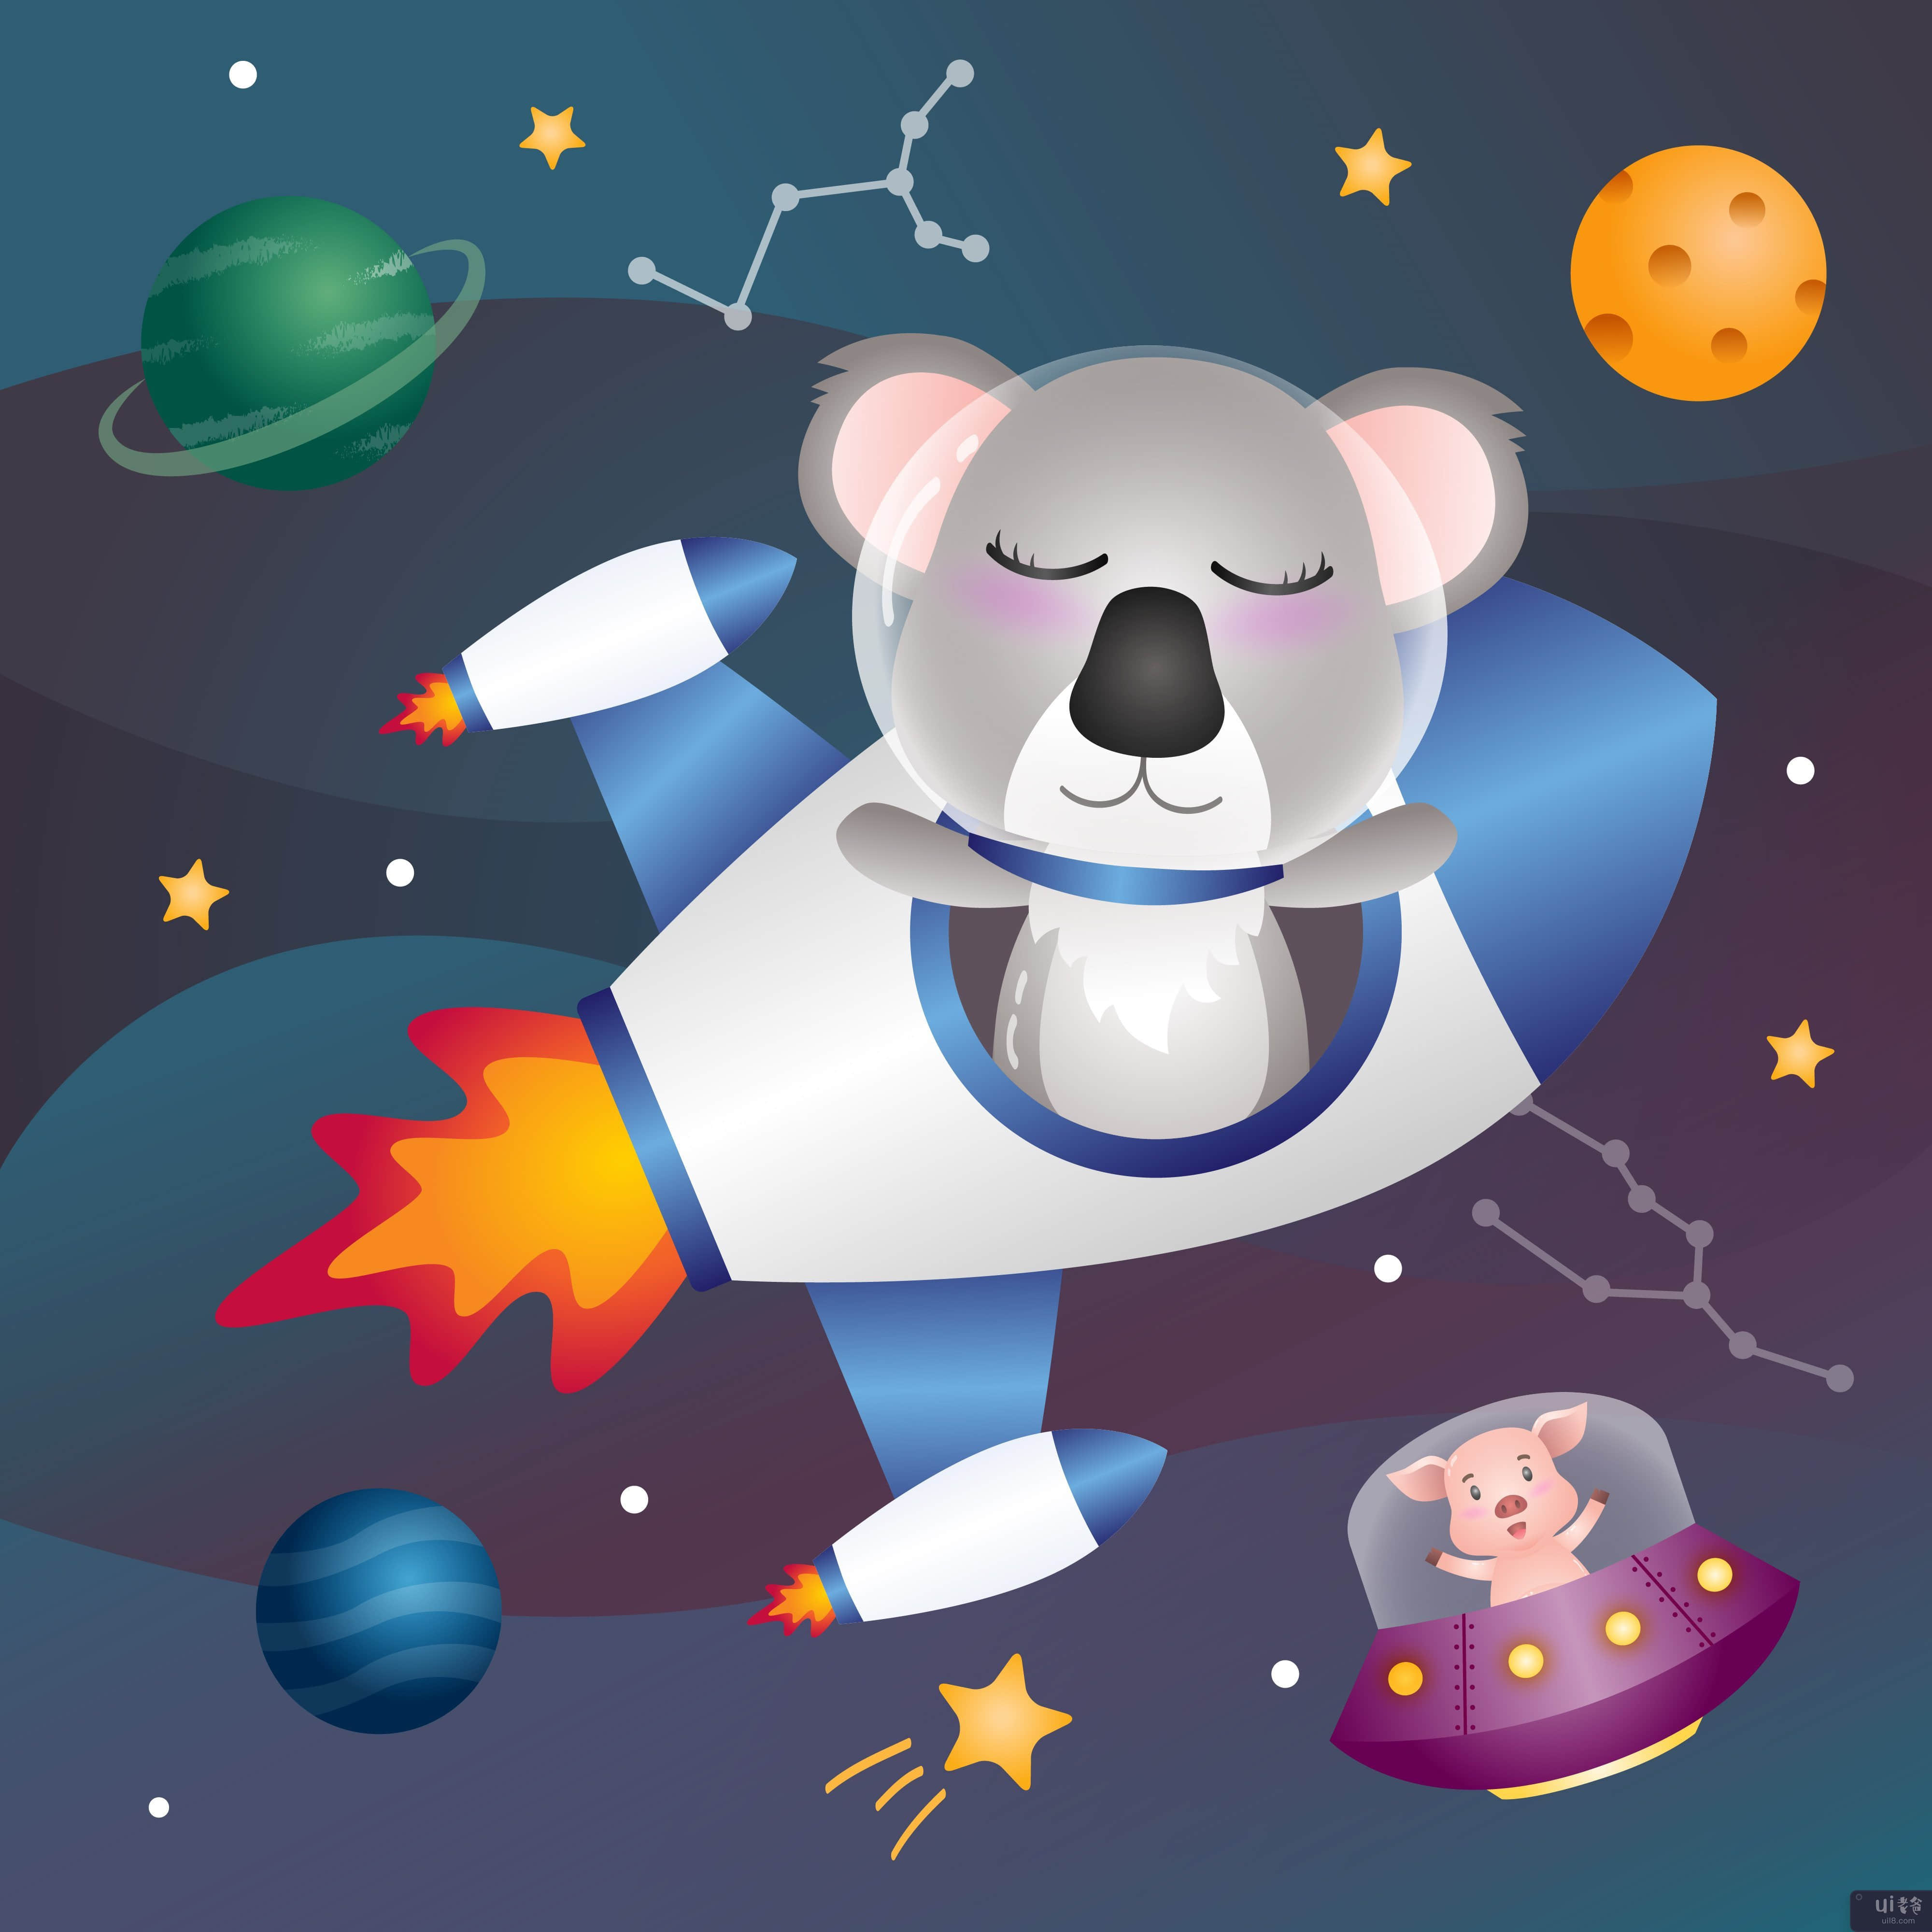 太空星系中的可爱考拉(a Cute koala in the space galaxy)插图2